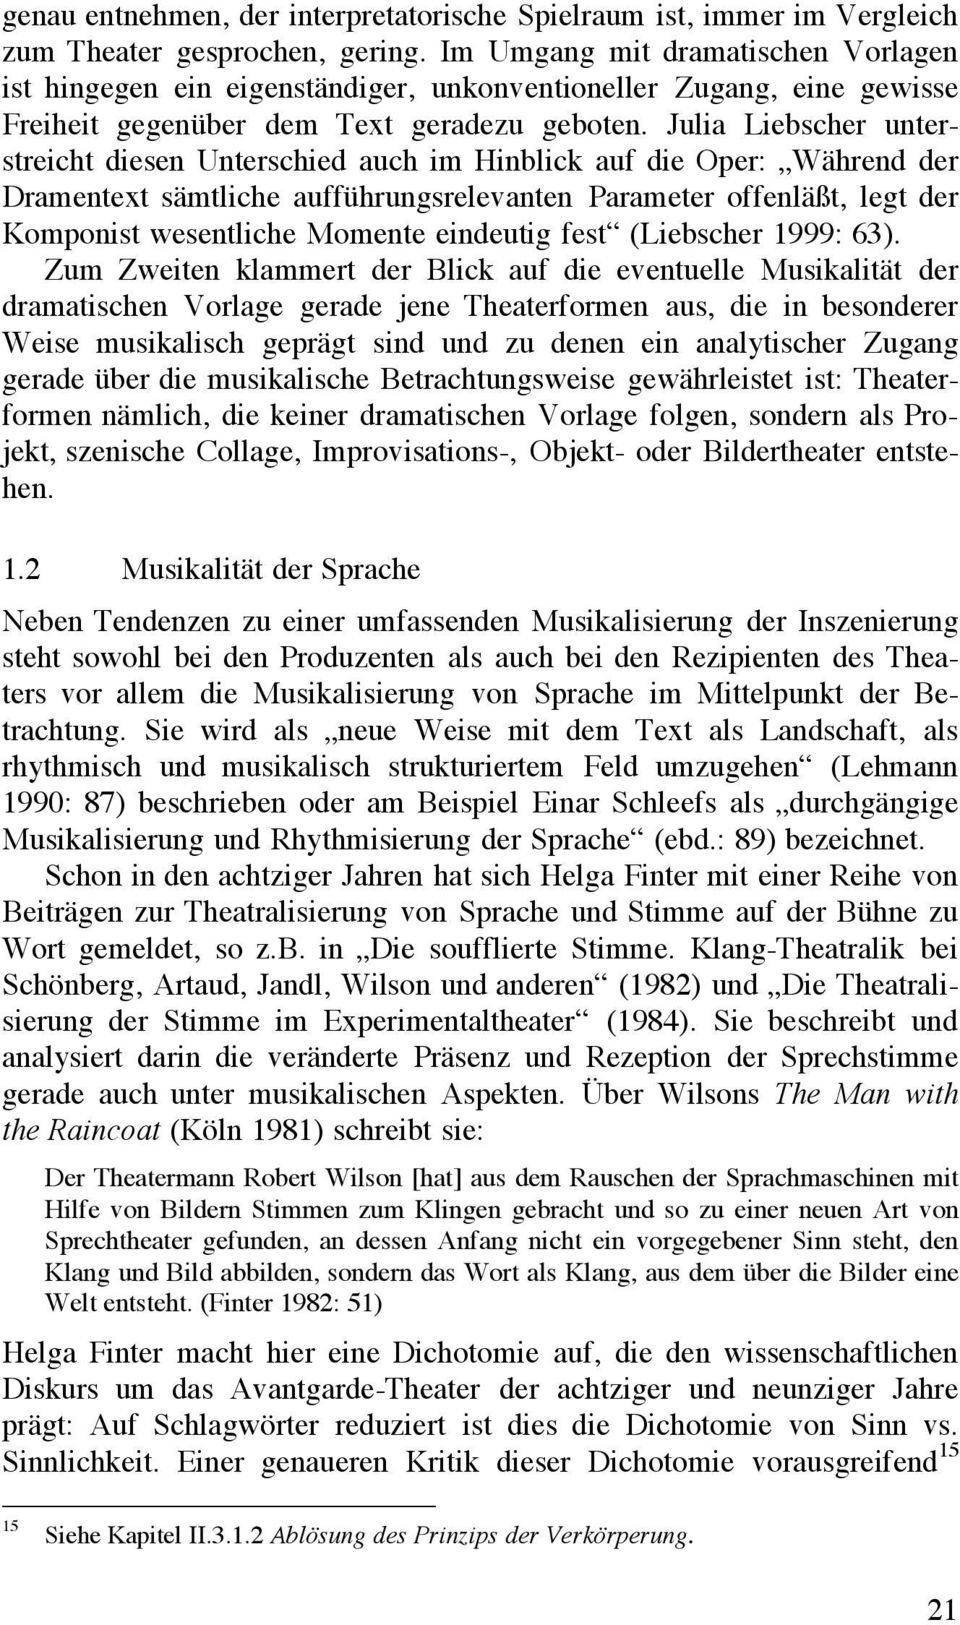 Julia Liebscher unterstreicht diesen Unterschied auch im Hinblick auf die Oper: Während der Dramentext sämtliche aufführungsrelevanten Parameter offenläßt, legt der Komponist wesentliche Momente